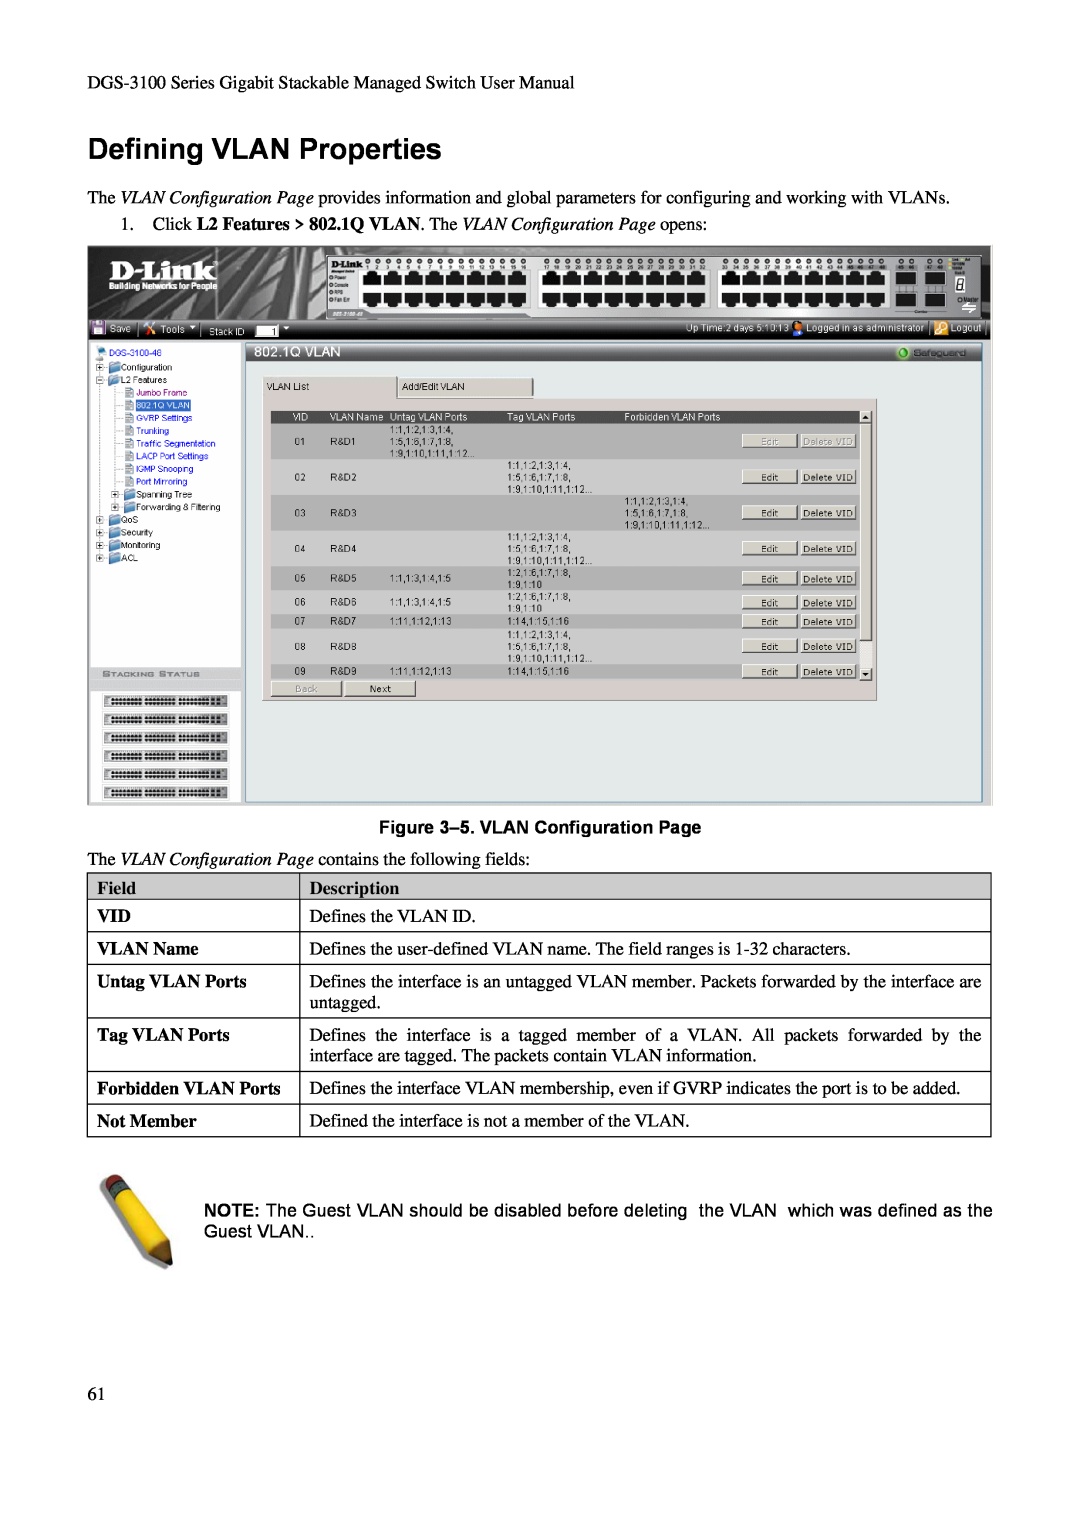 D-Link DGS-3100 Defining VLAN Properties, Click L2 Features 802.1Q VLAN. The VLAN Configuration Page opens, Description 